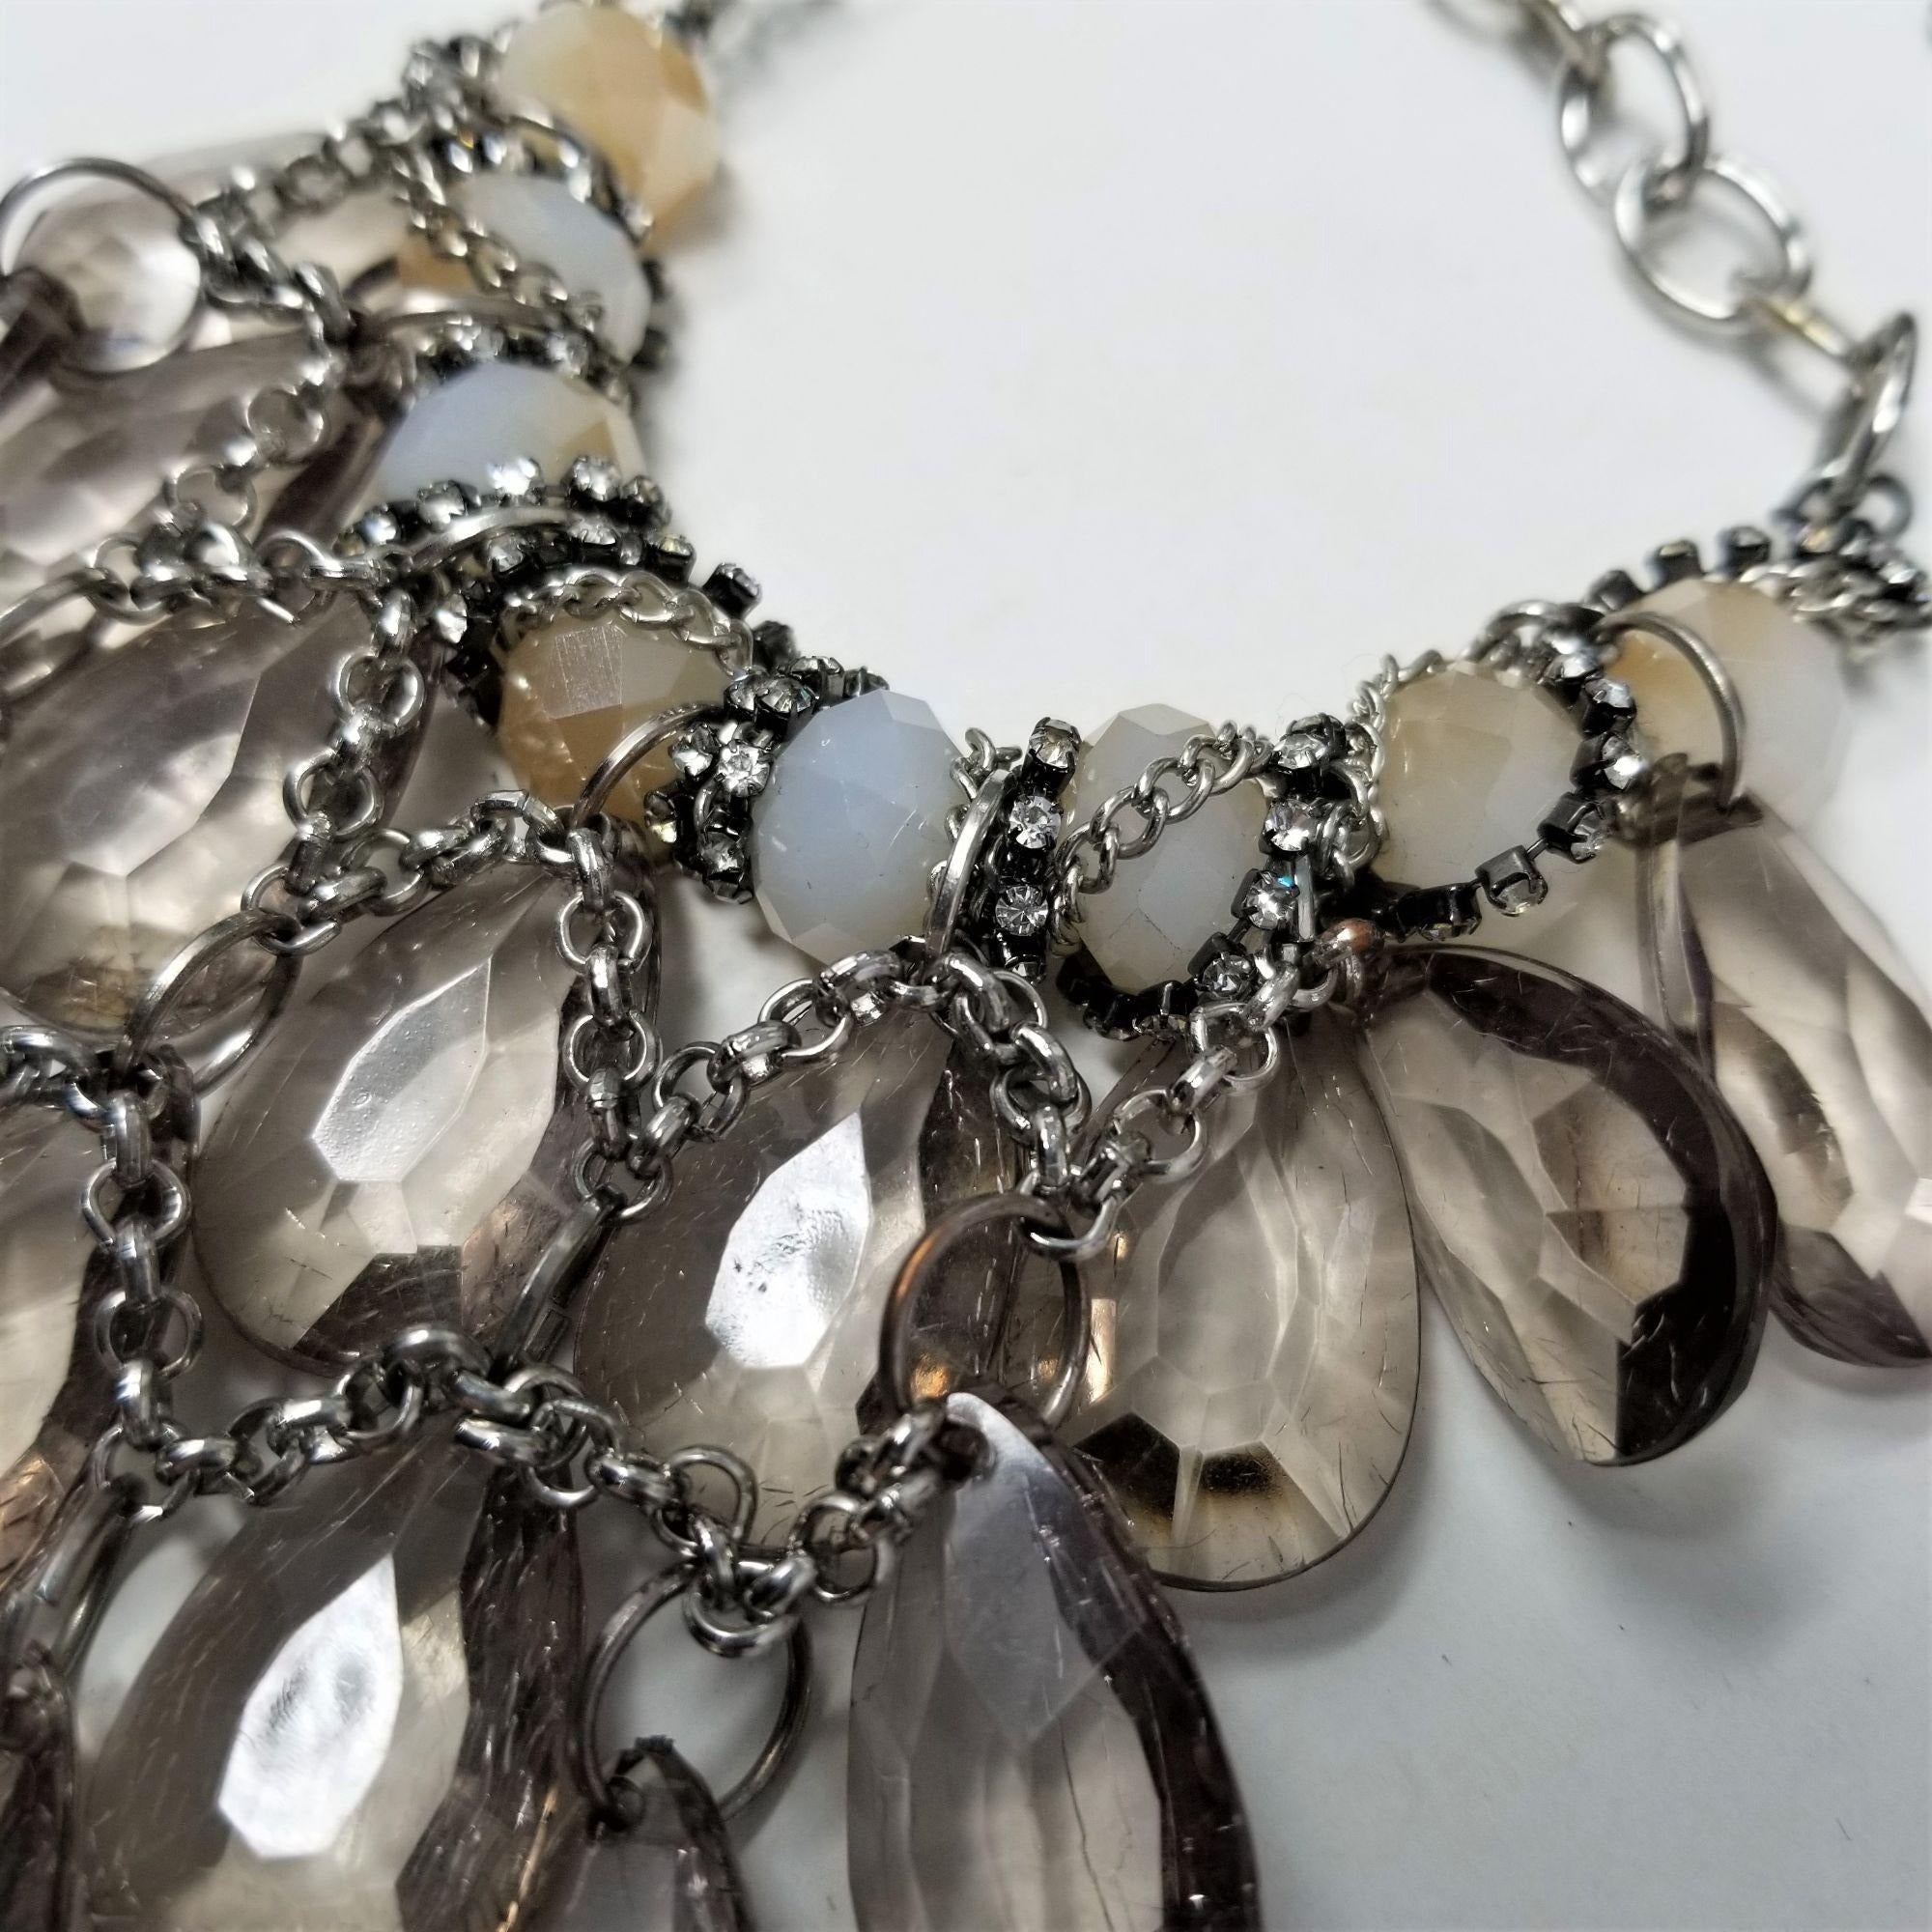 Sparkling Teardrop Silver Necklace w/ Rhinestones